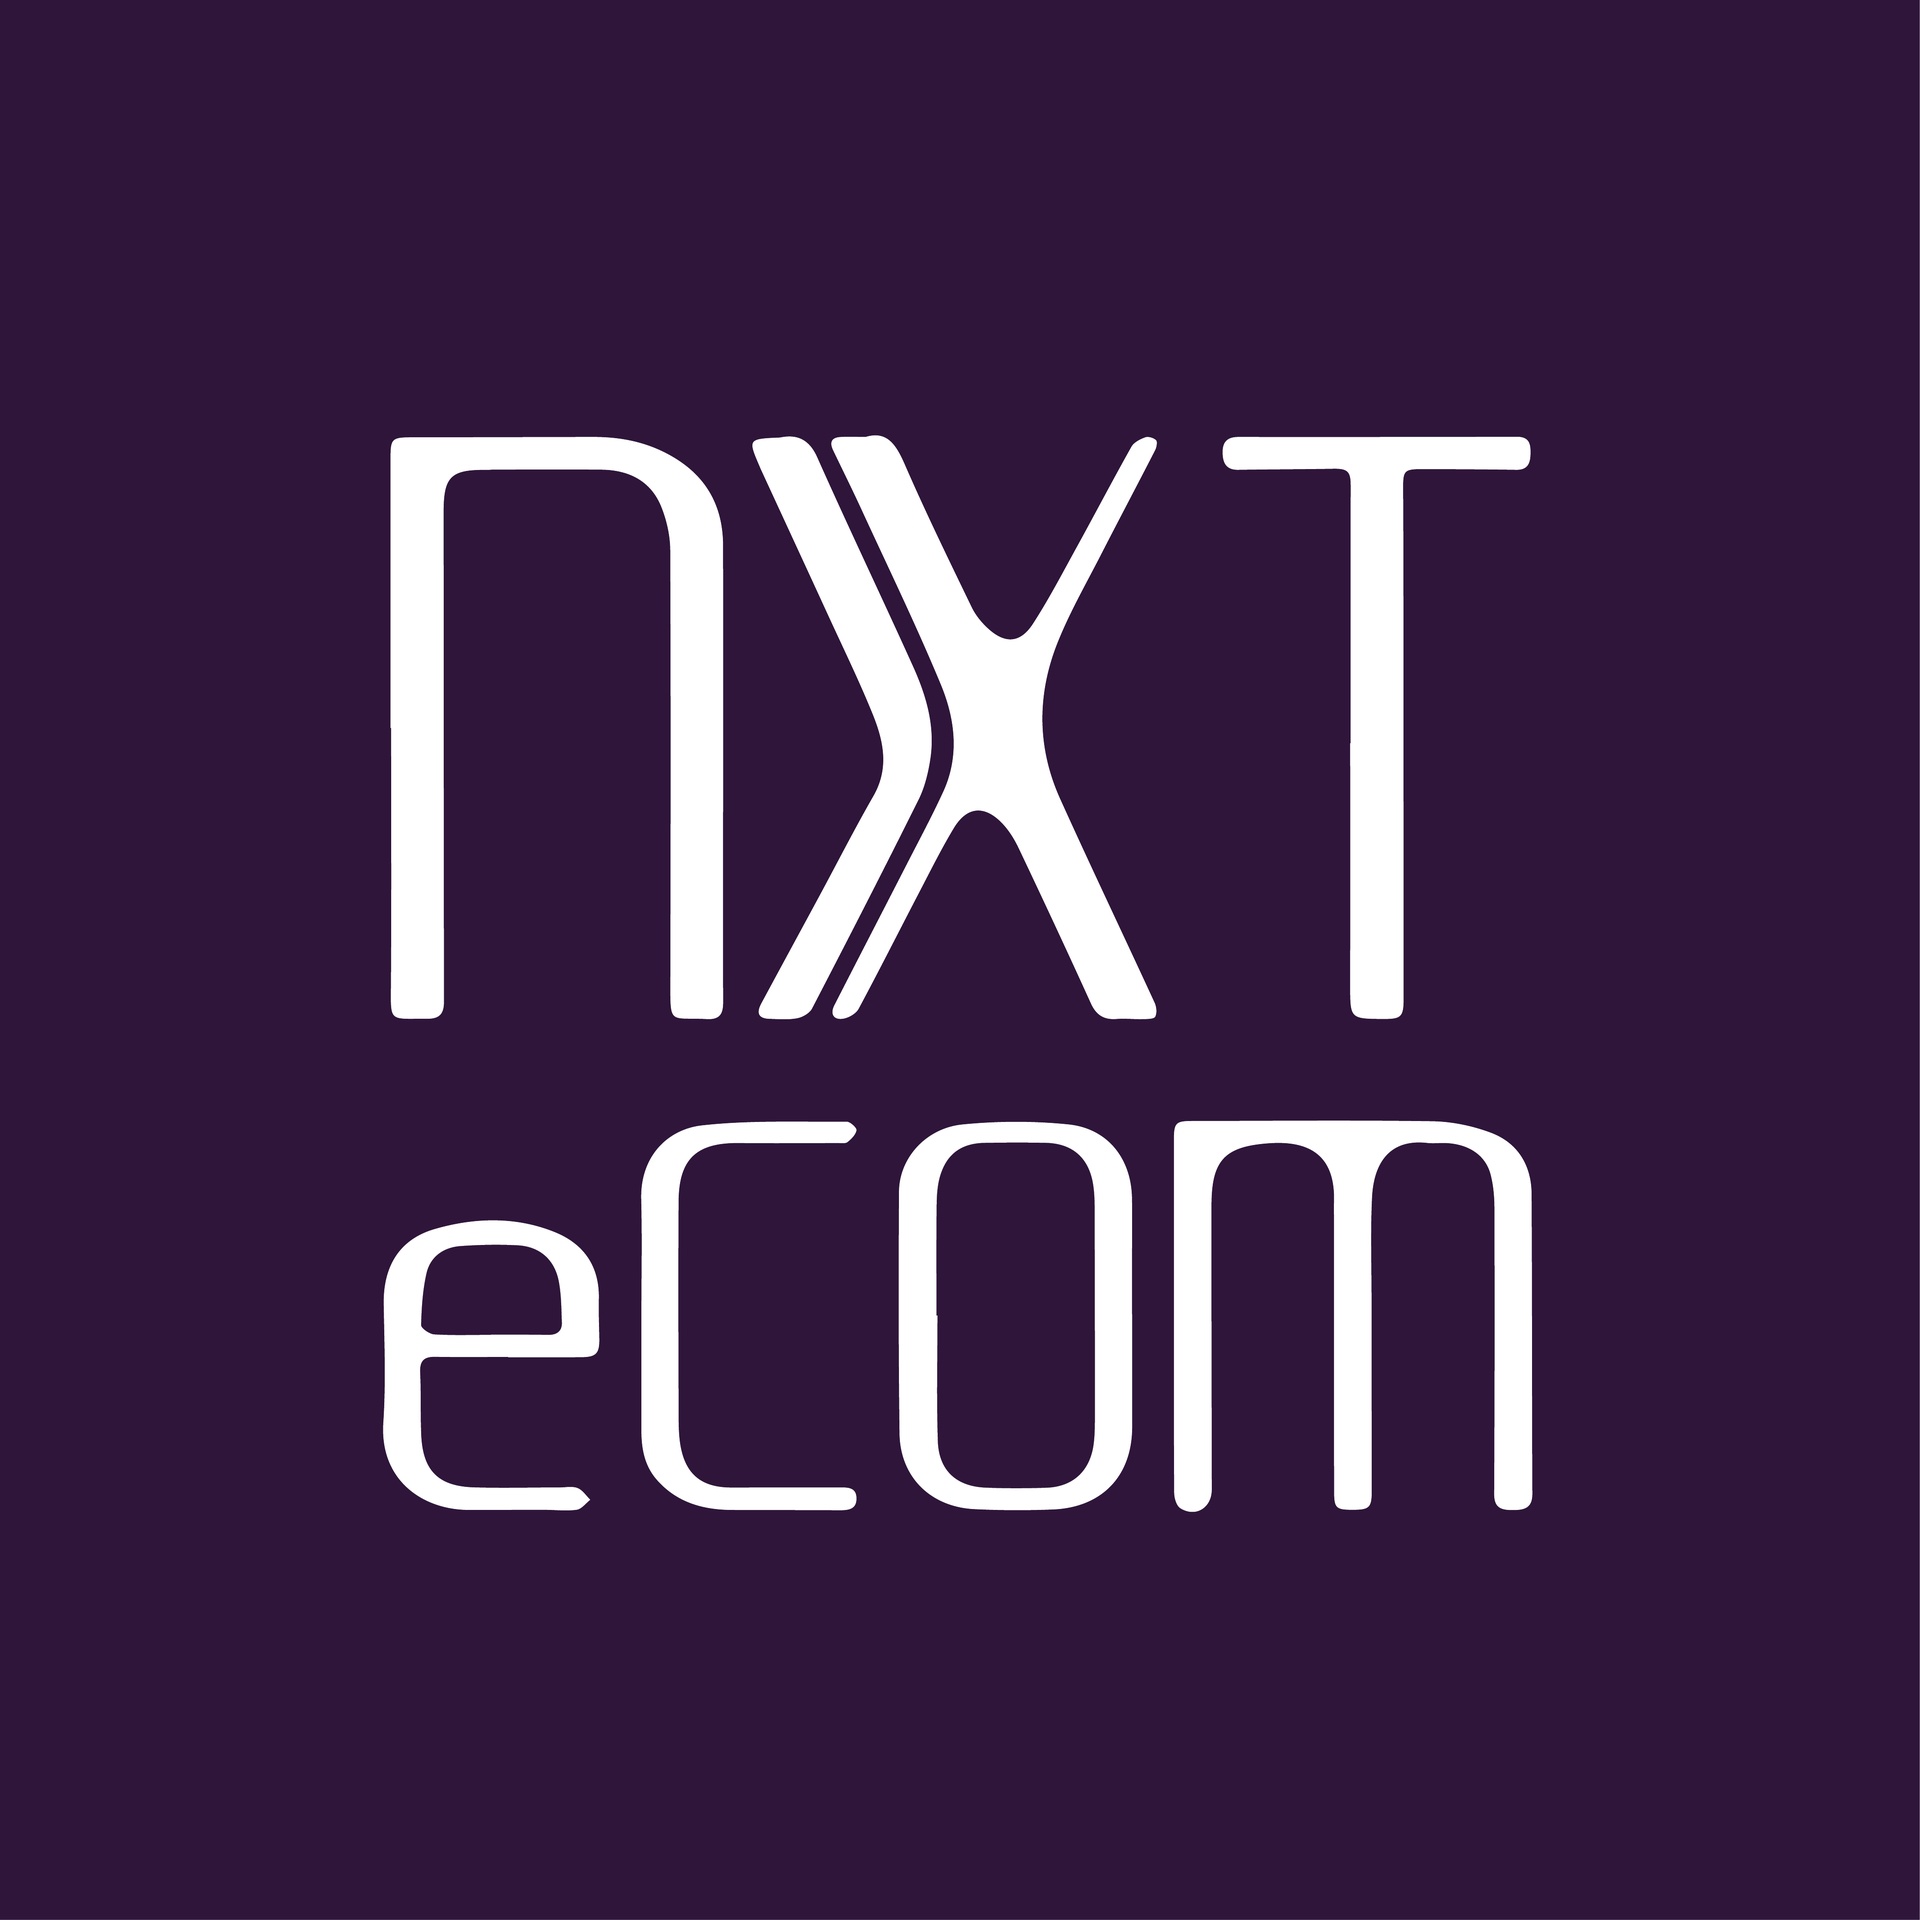 Nxt Ecommerce Solutions Turkey Kurumsal İş Çözümleri Lojistik Hiz. Teknoloji ve Dijital Danışmanlık Pazarlama İth. İhr. Tic. Ltd. Şti.